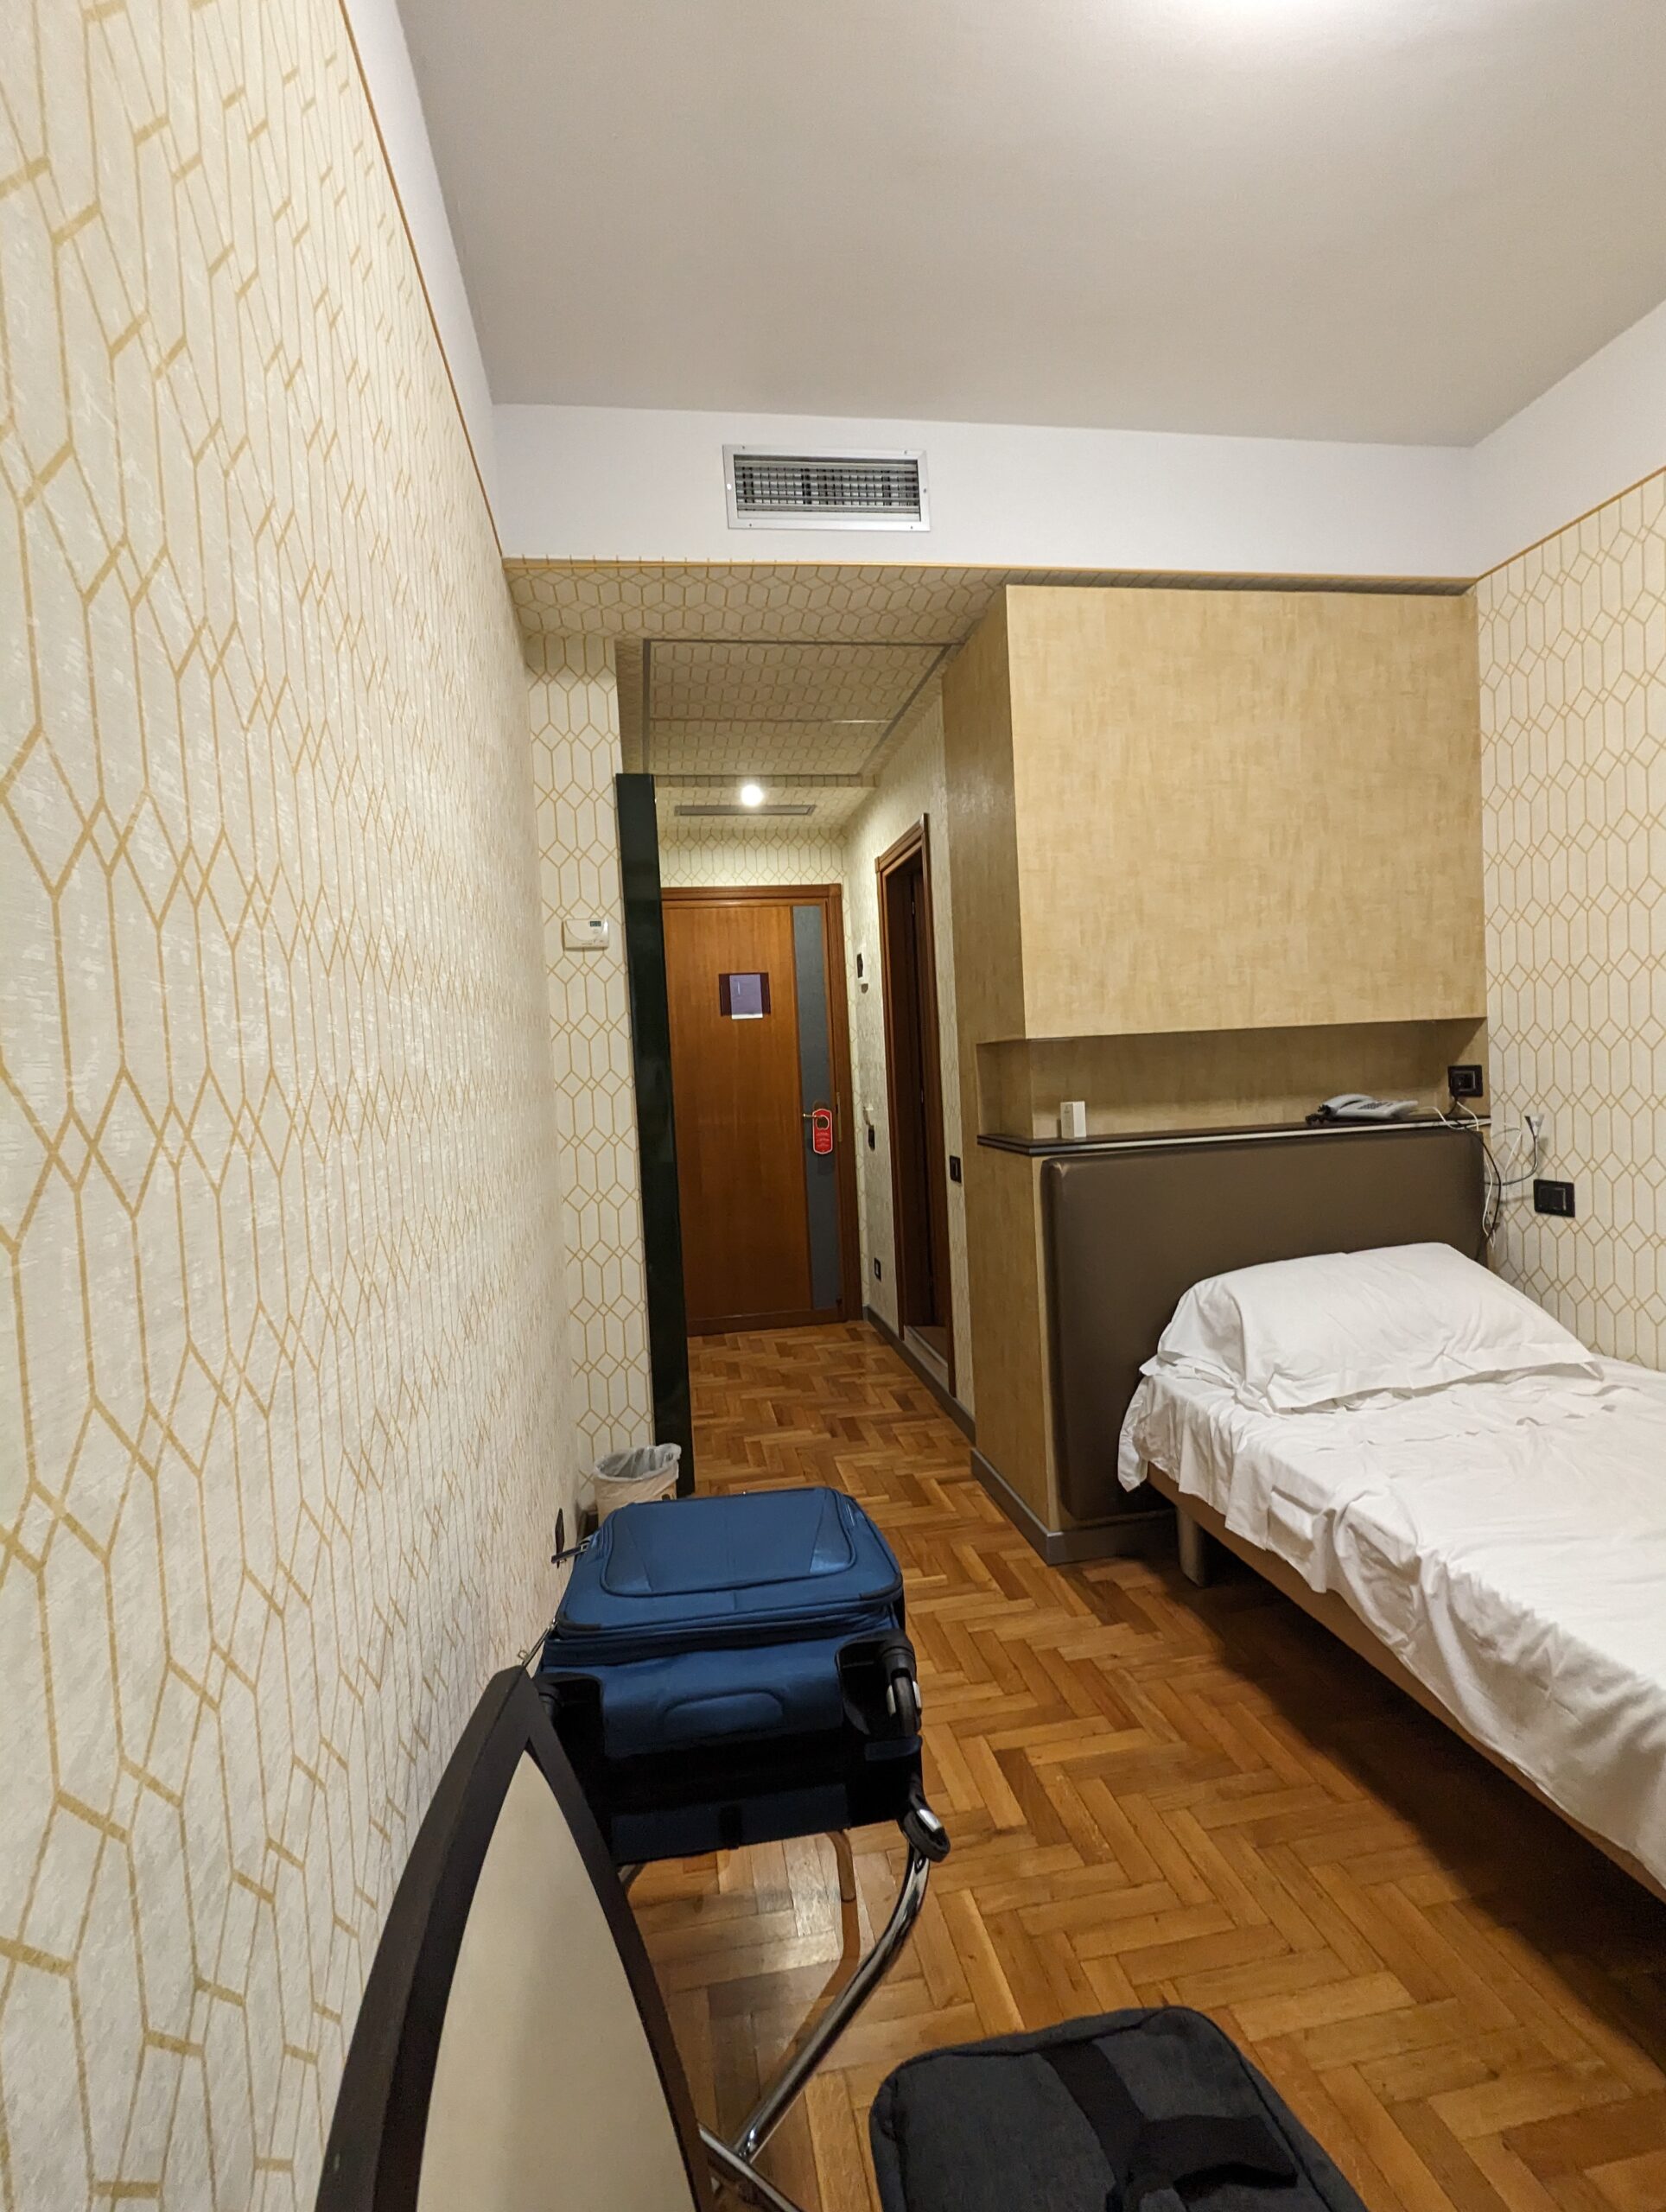 Enea Hotel Room 101 bed area